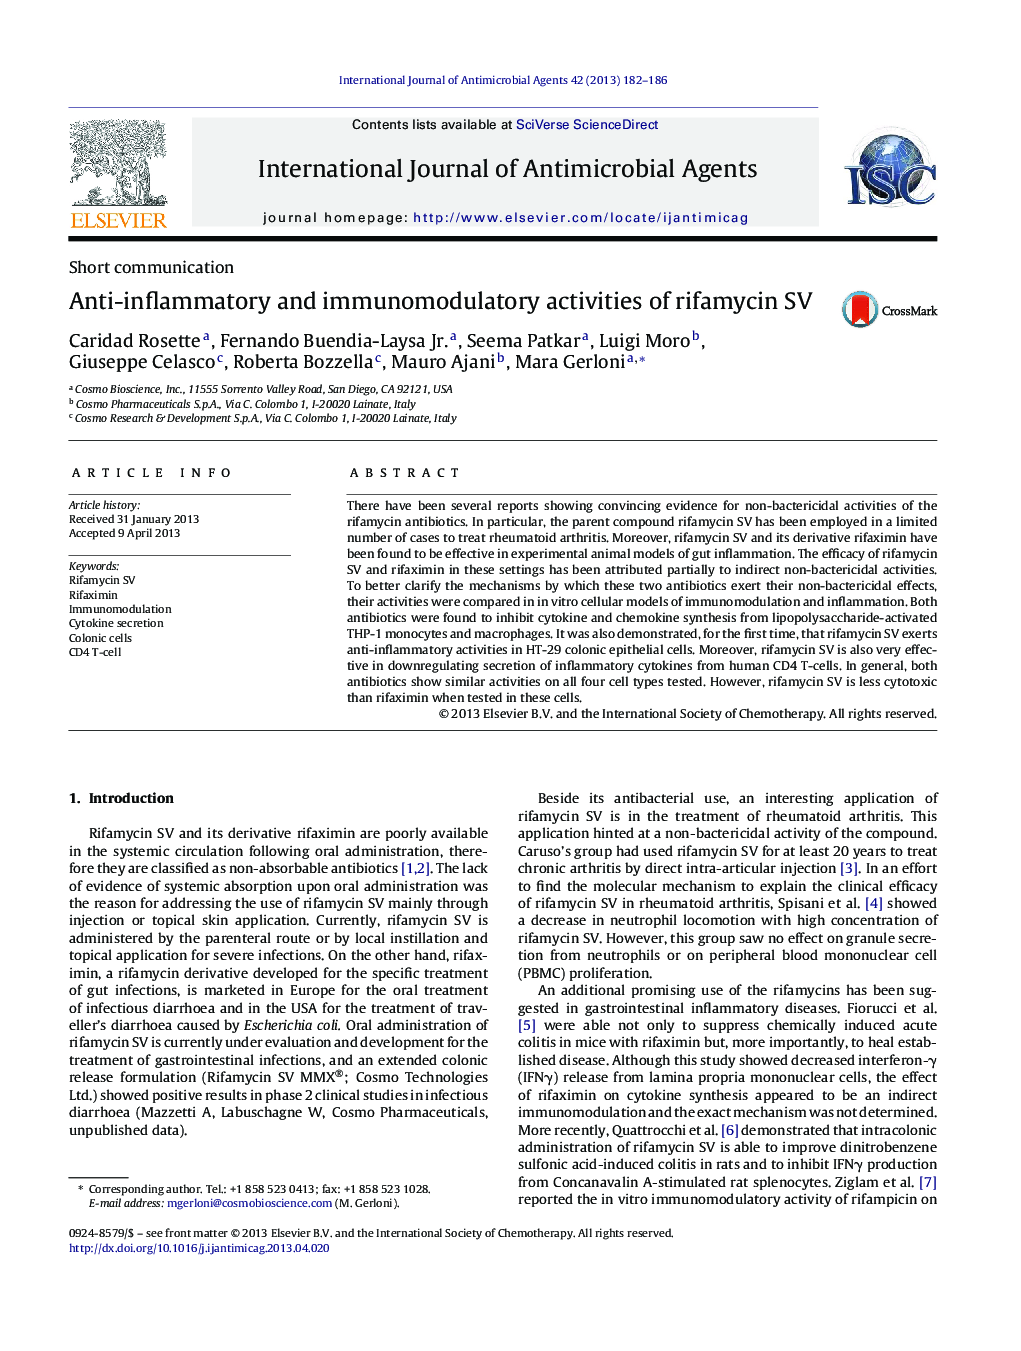 Anti-inflammatory and immunomodulatory activities of rifamycin SV